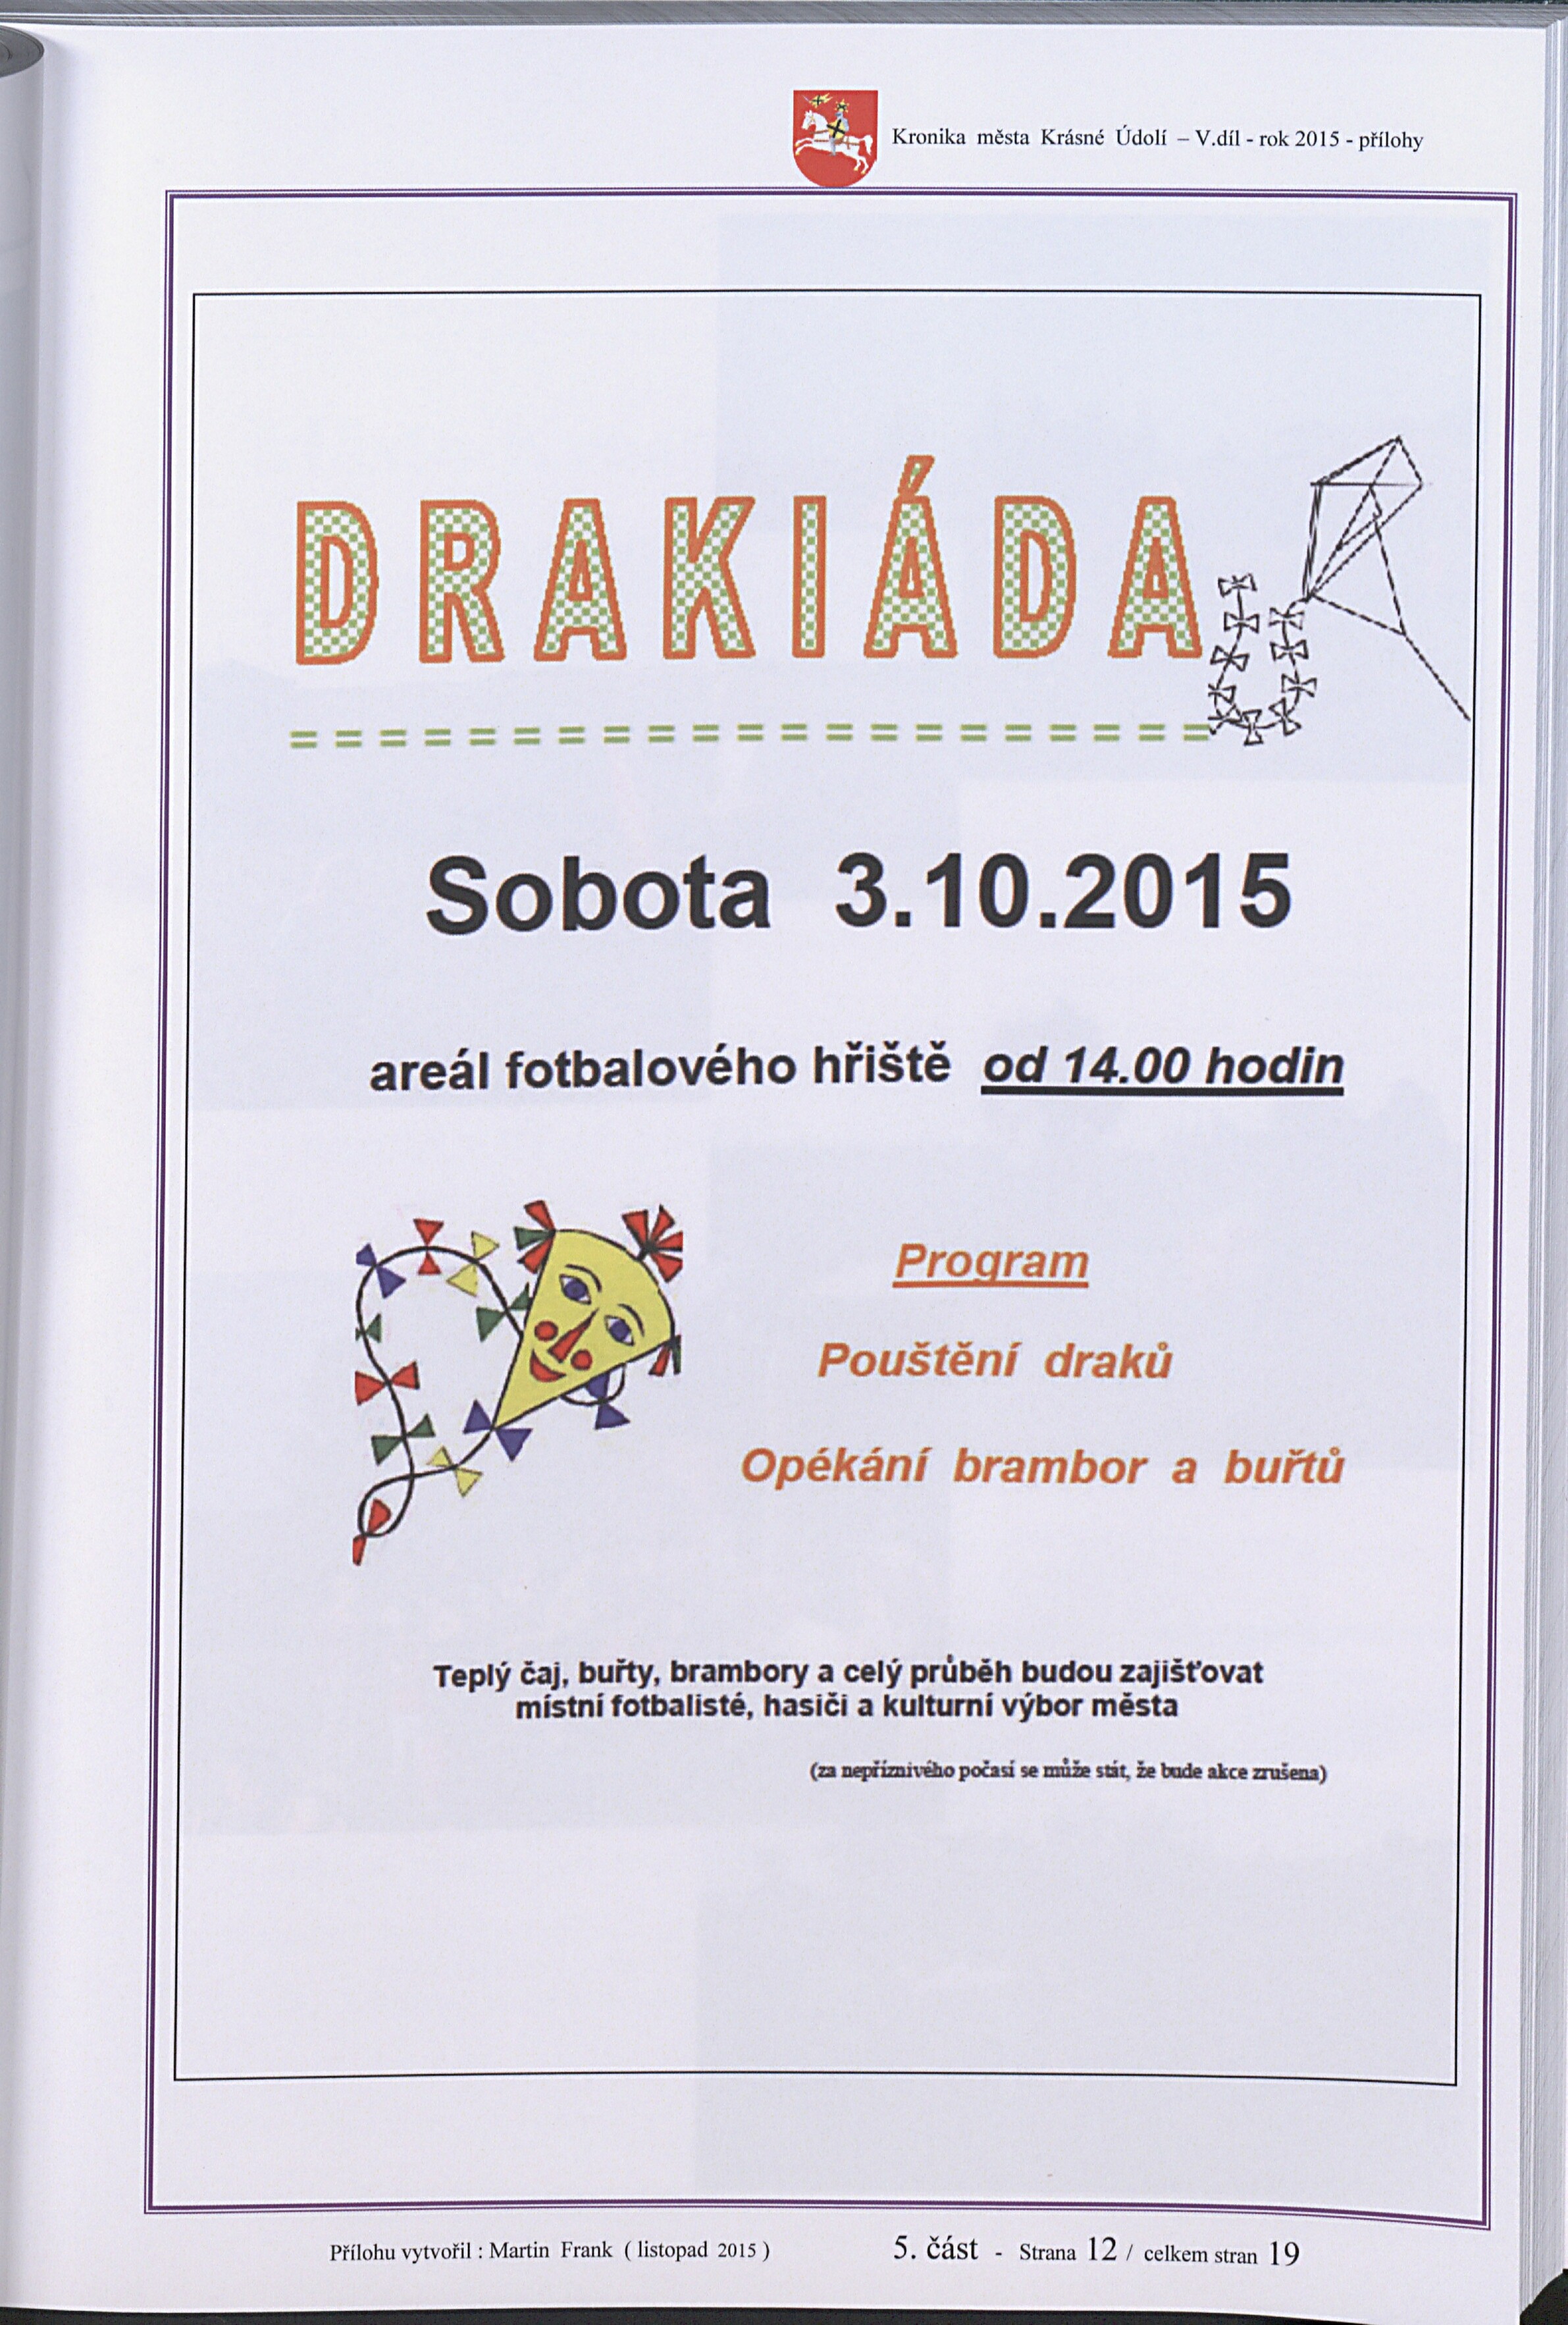 123. soap-kv_01831_mesto-krasne-udoli-2015_1240